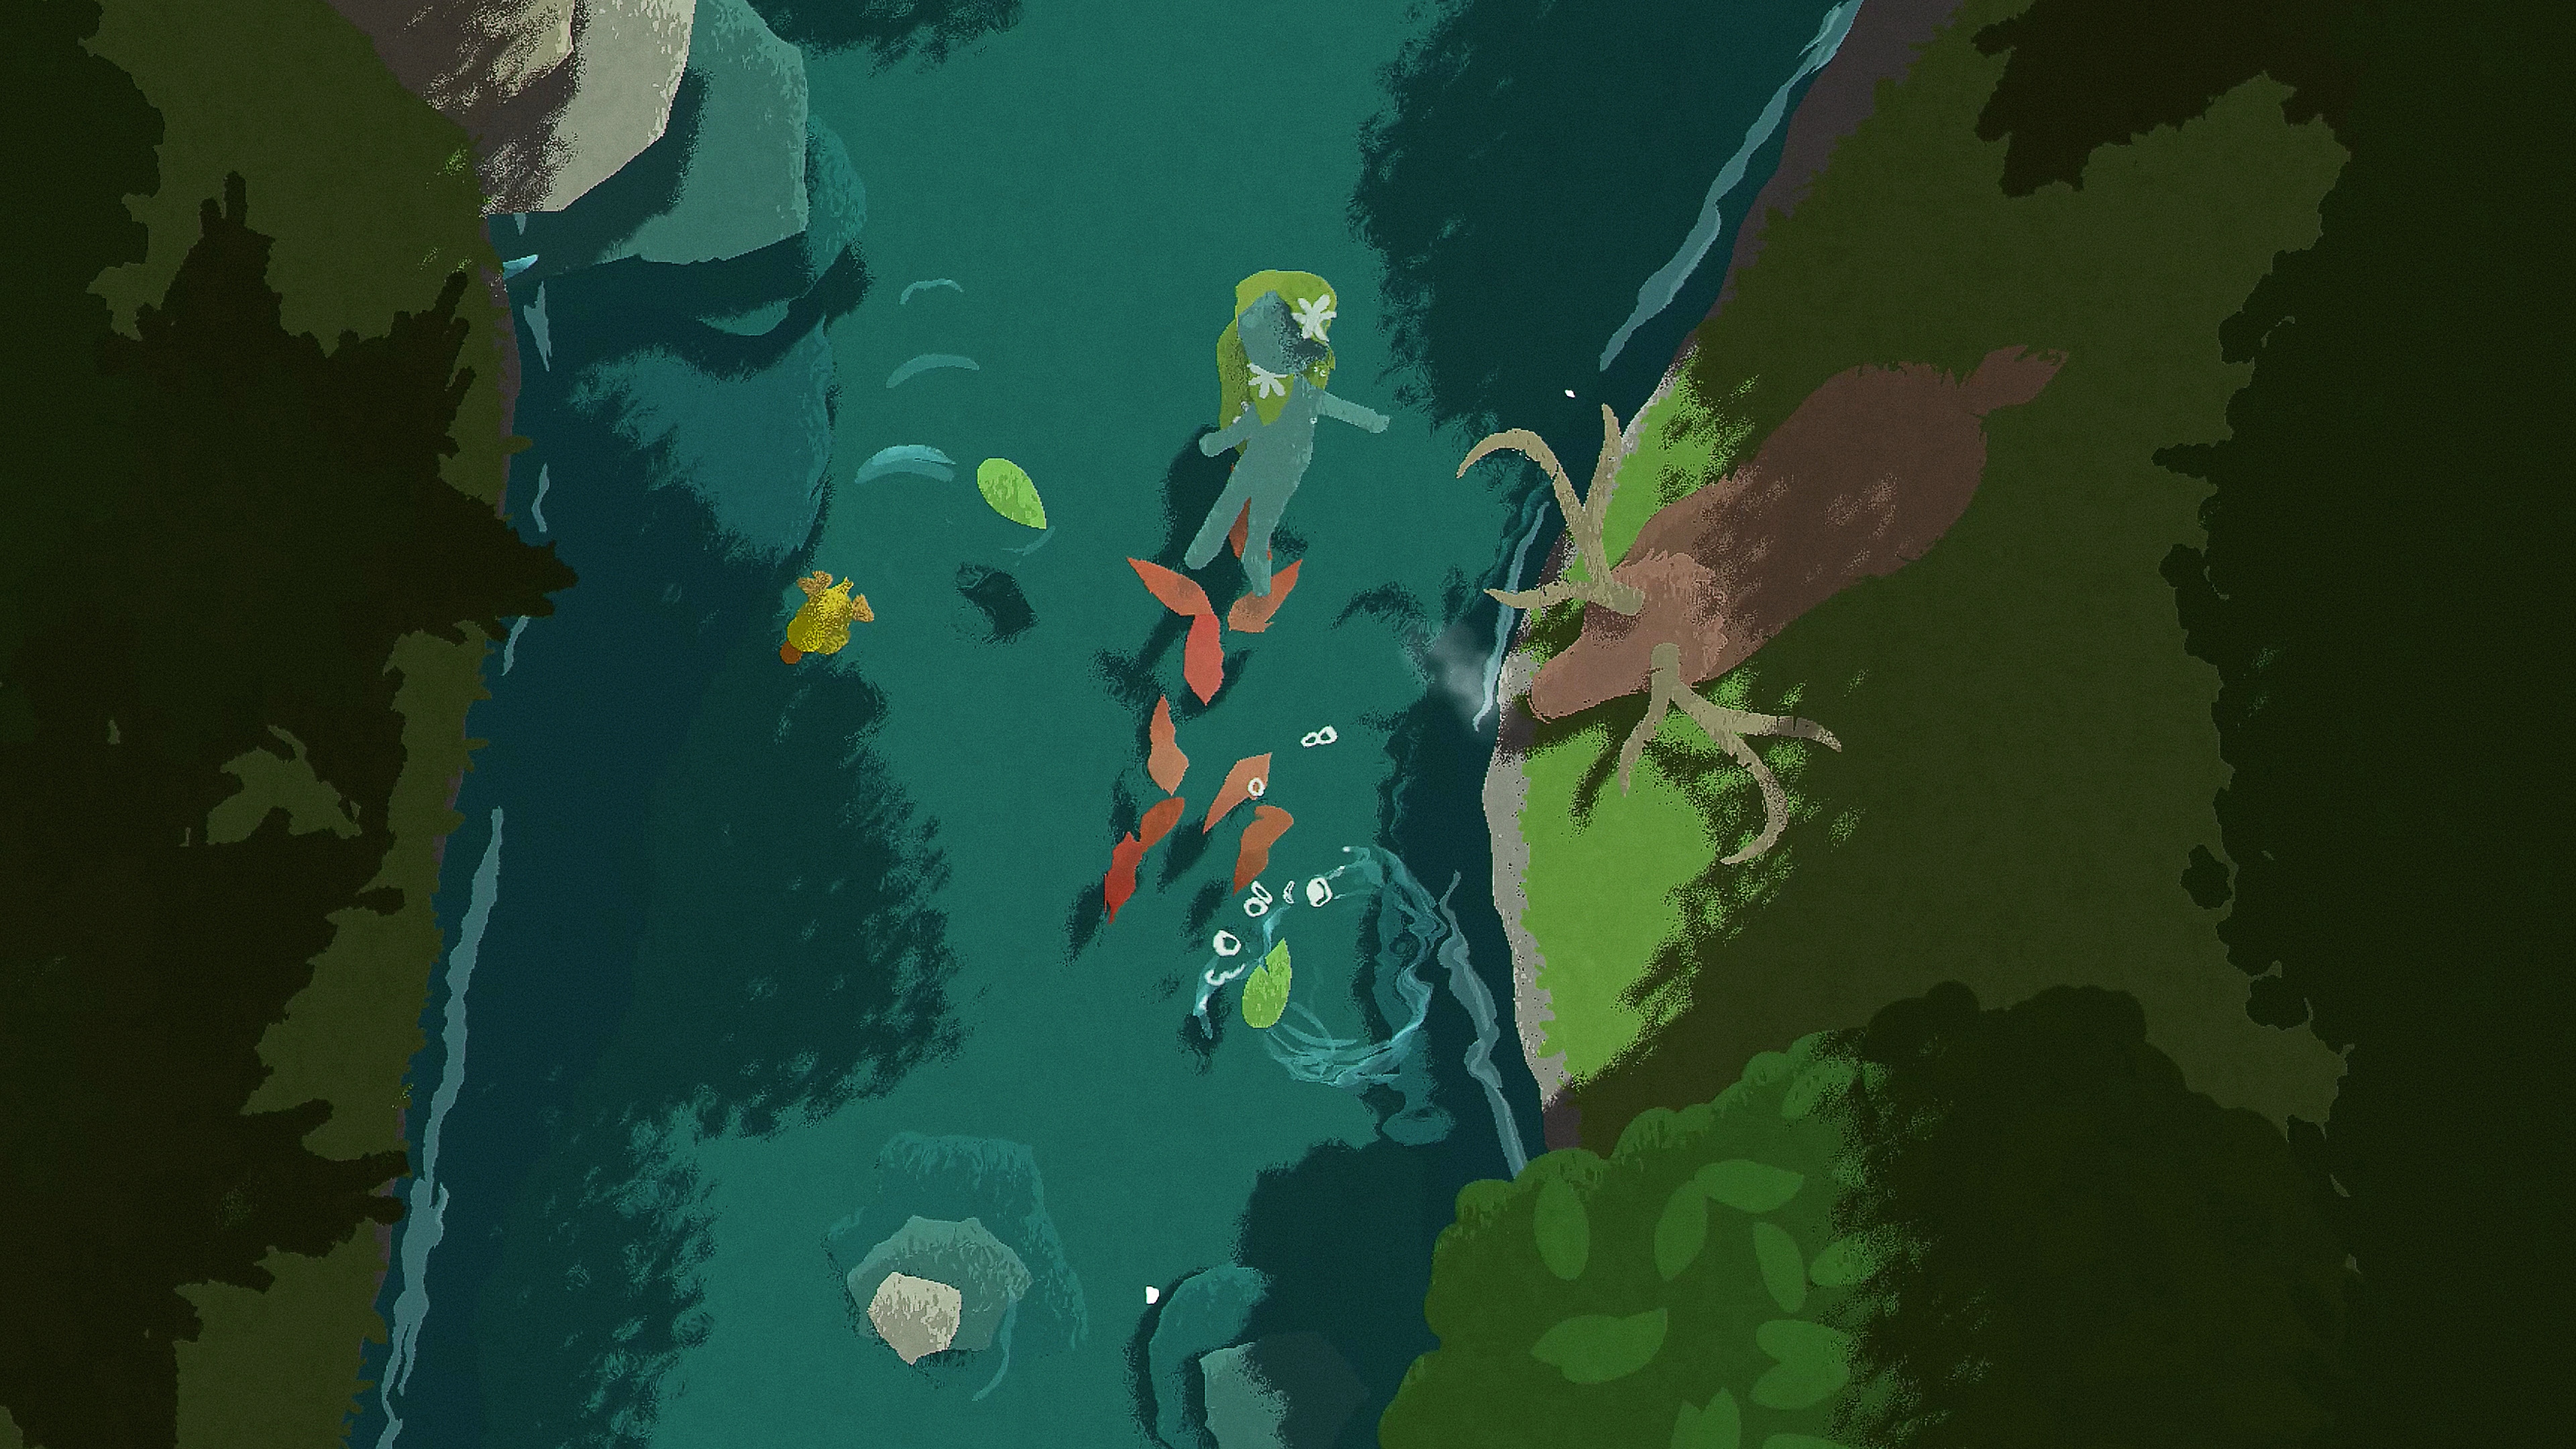 Naiad-skærmbillede med en figur, der flyder ned ad en flod, imens et dådyr står ved bredden